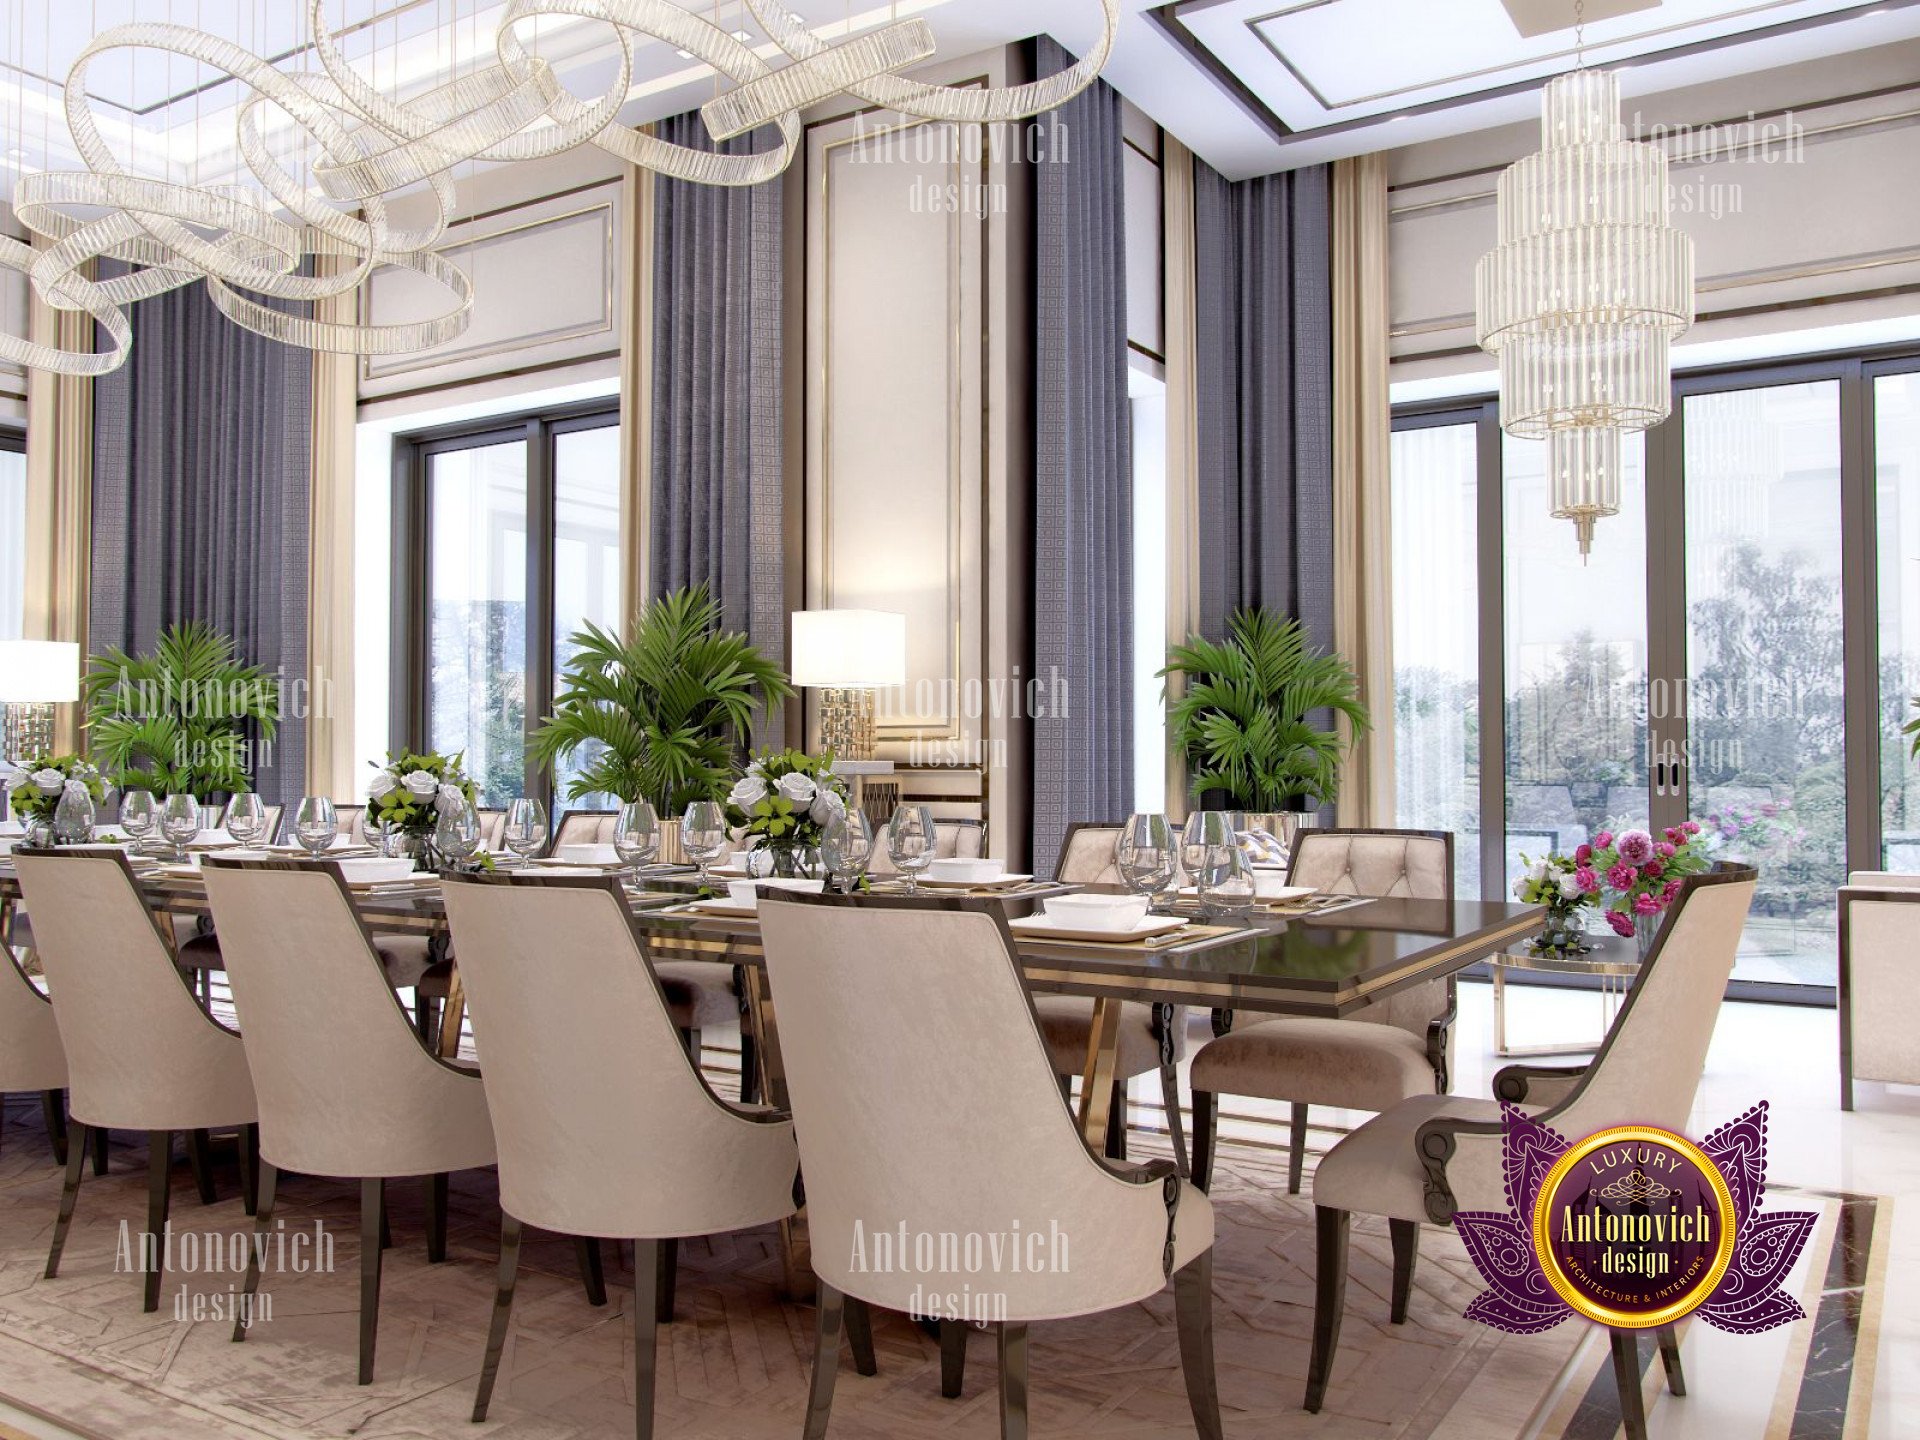 Best dining room design luxury interior design company in California